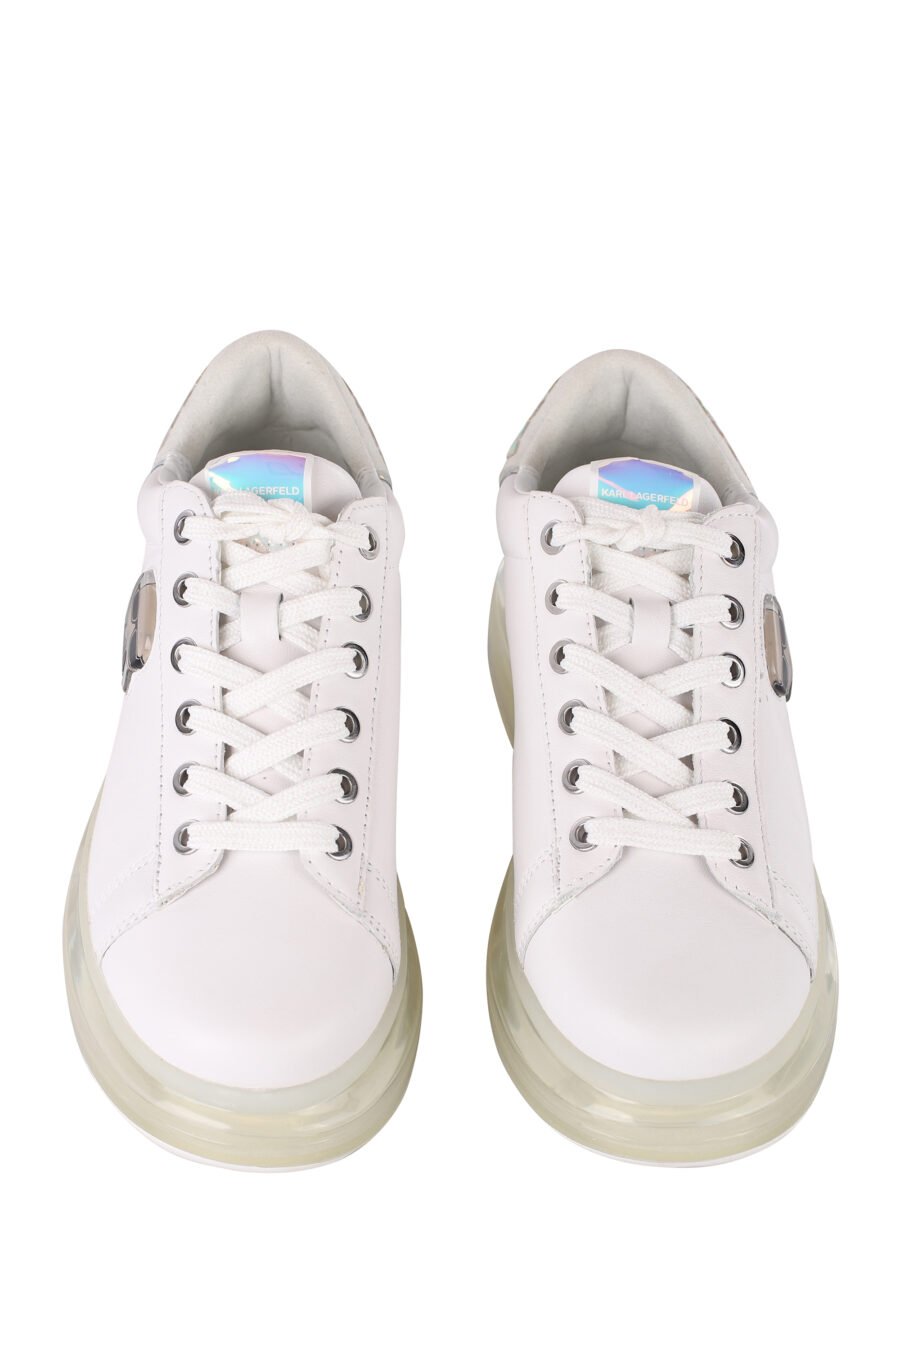 Zapatillas blancas con suela transparente y detalles en strass - IMG 1399